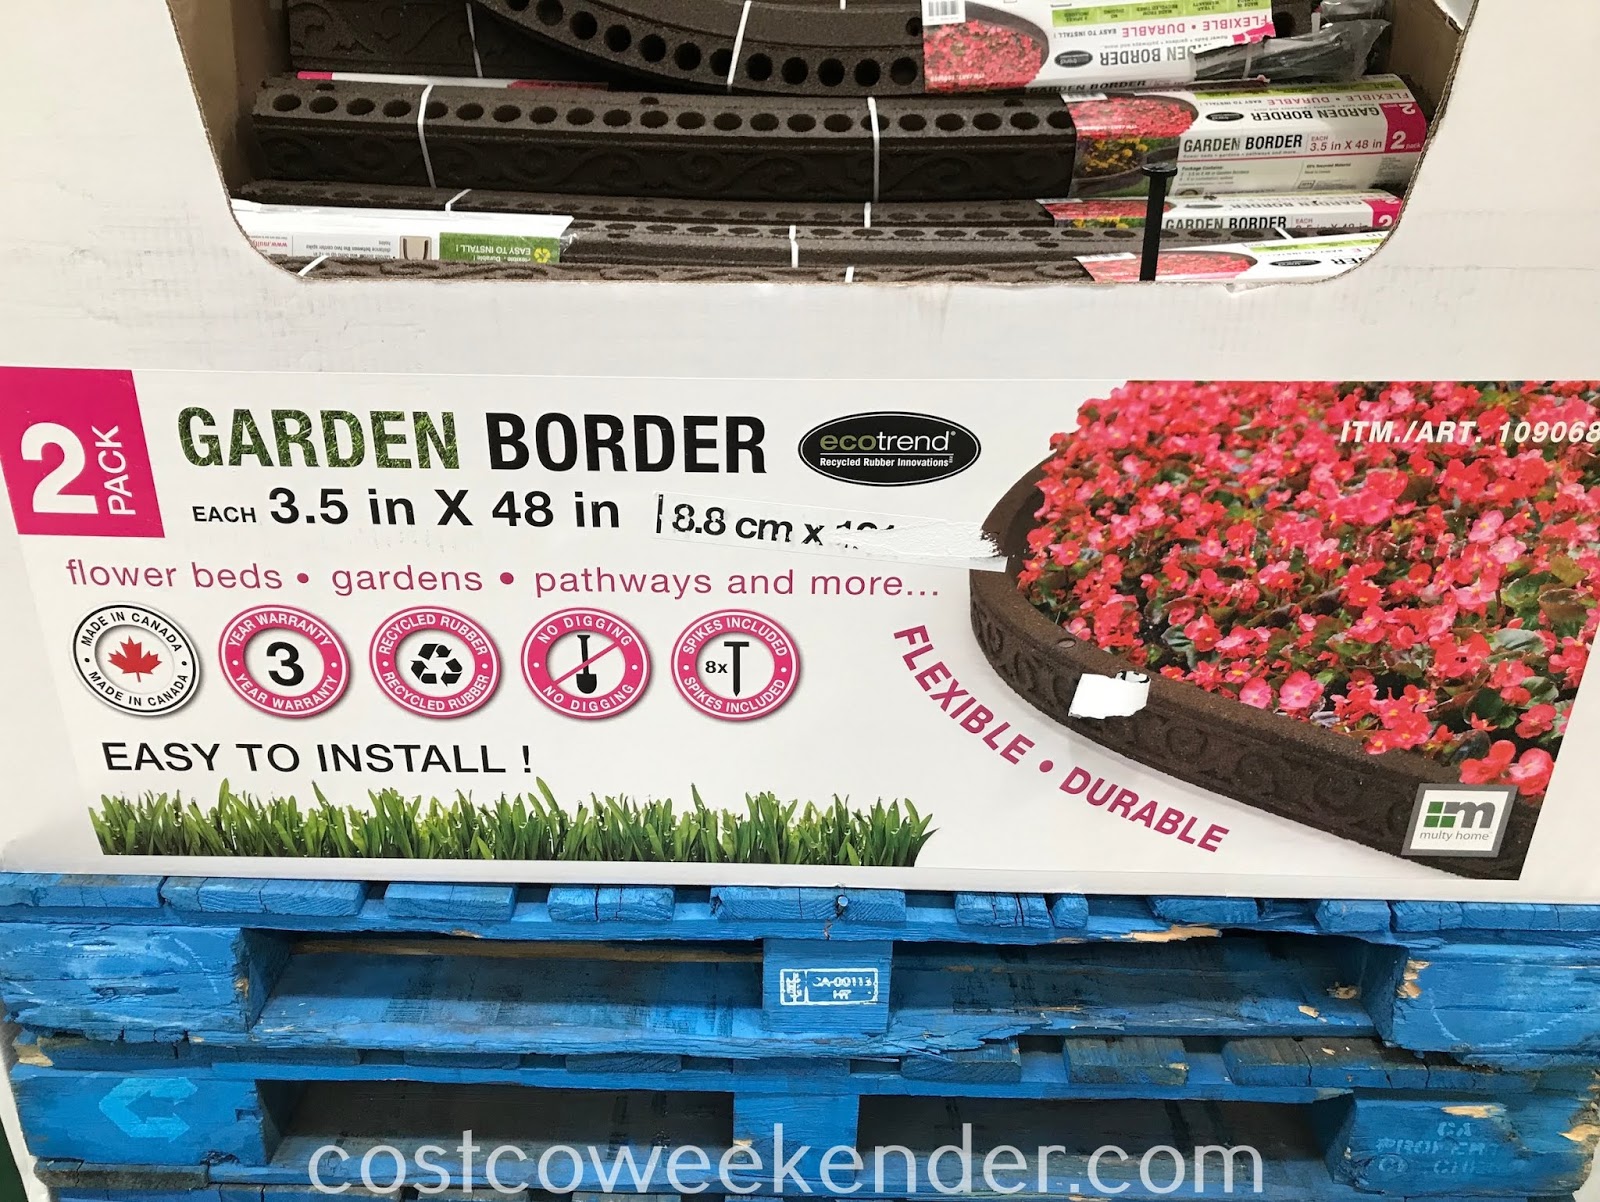 Ecotrend Flexible Rubber Garden Borders 2 Pack Costco Weekender